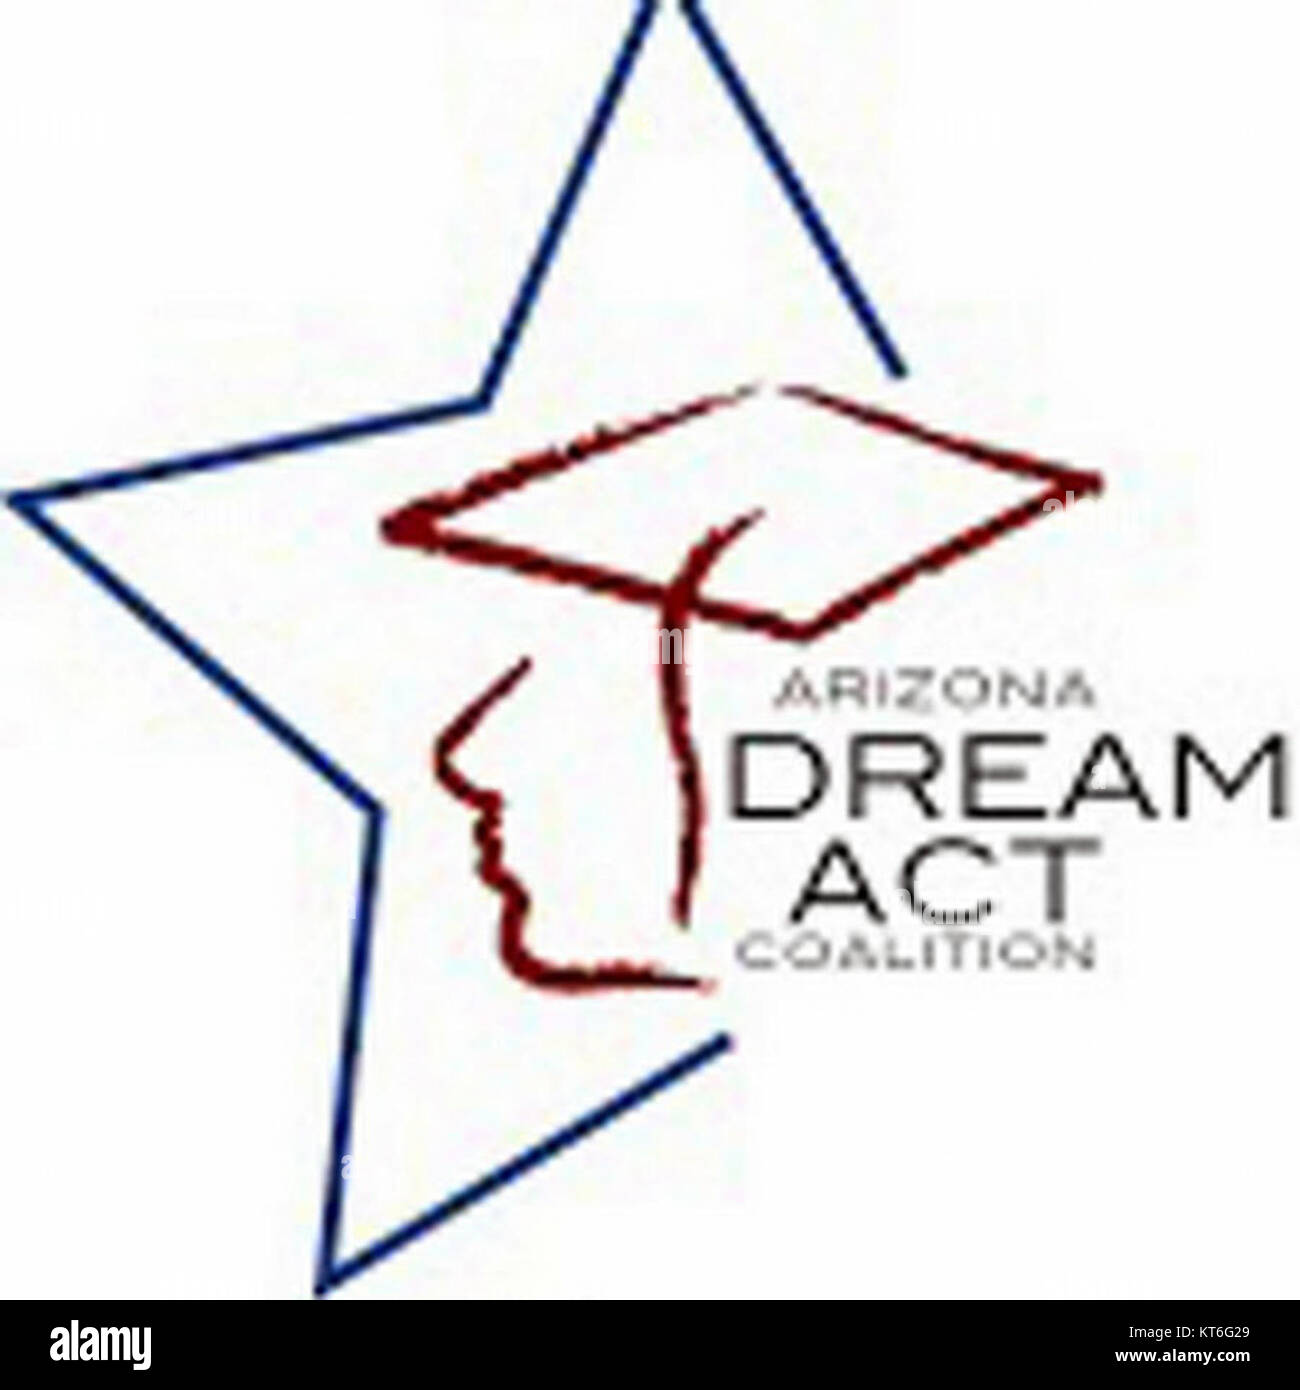 Arizona Dream Act Coalition logo 1 Stock Photo